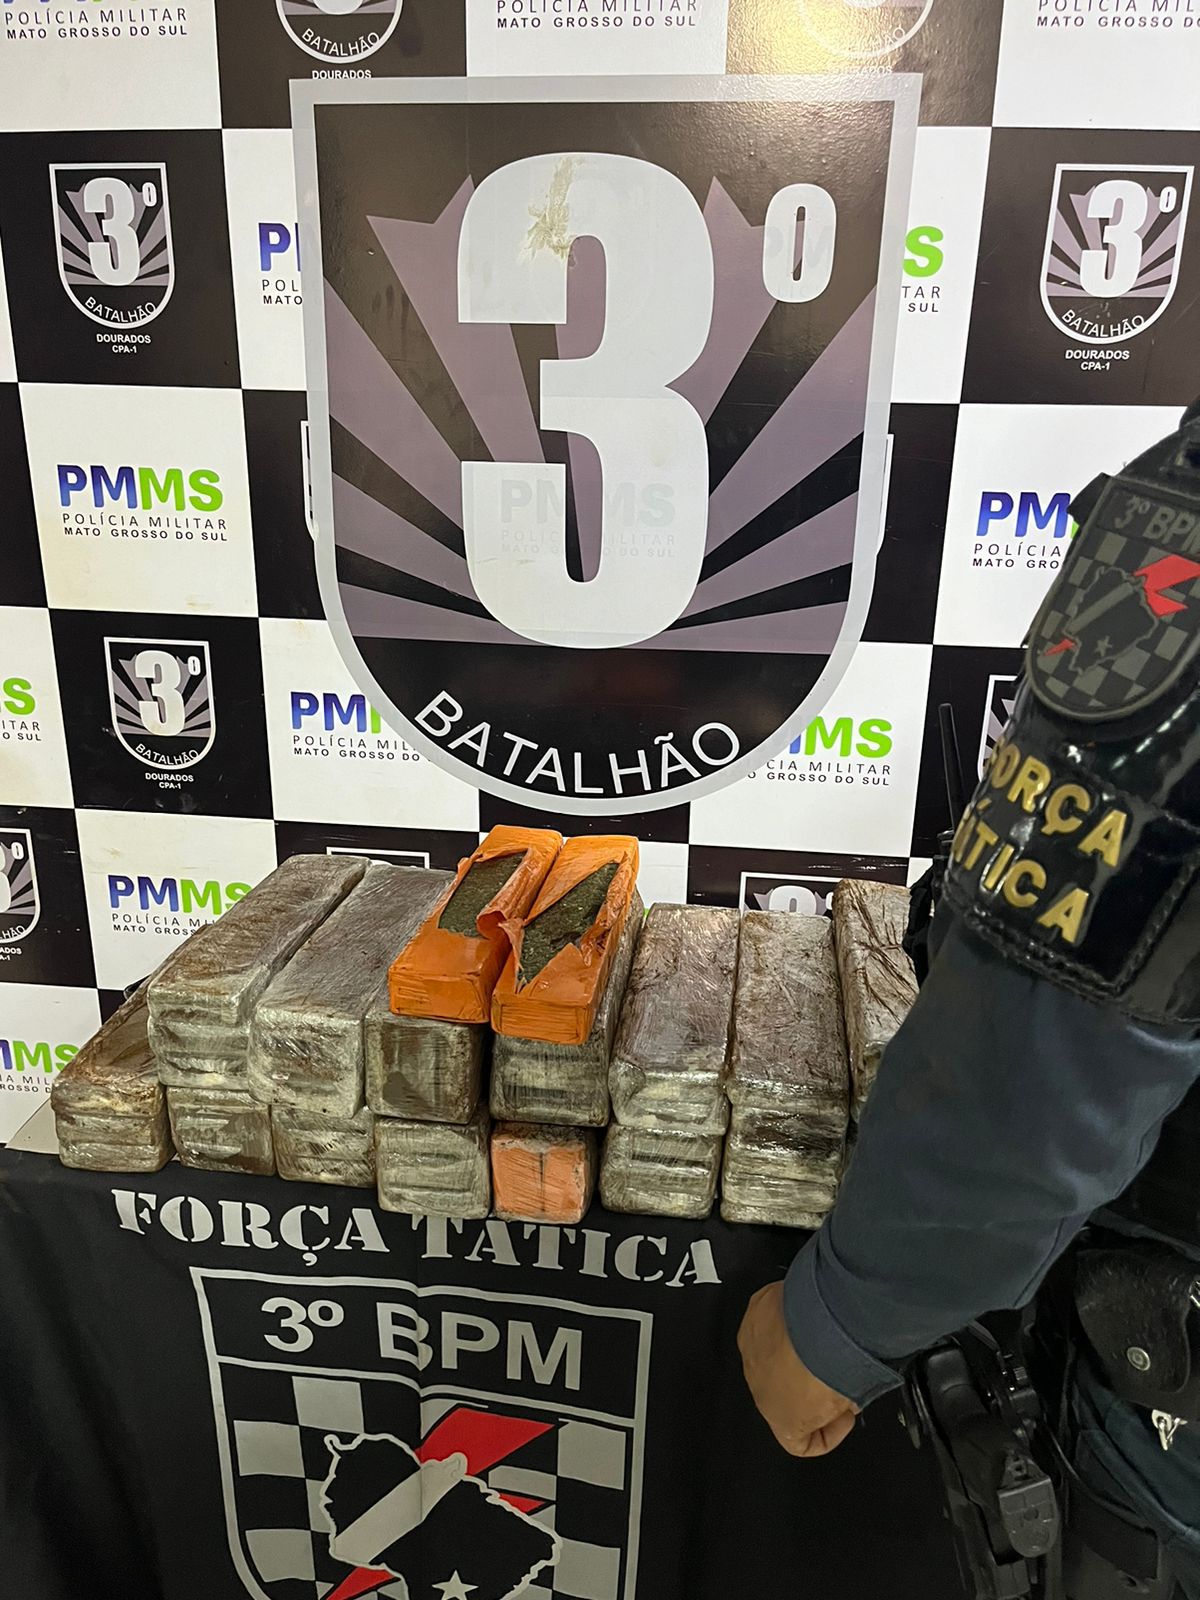  Polícia Militar Combate o Tráfico de Drogas em Dourados